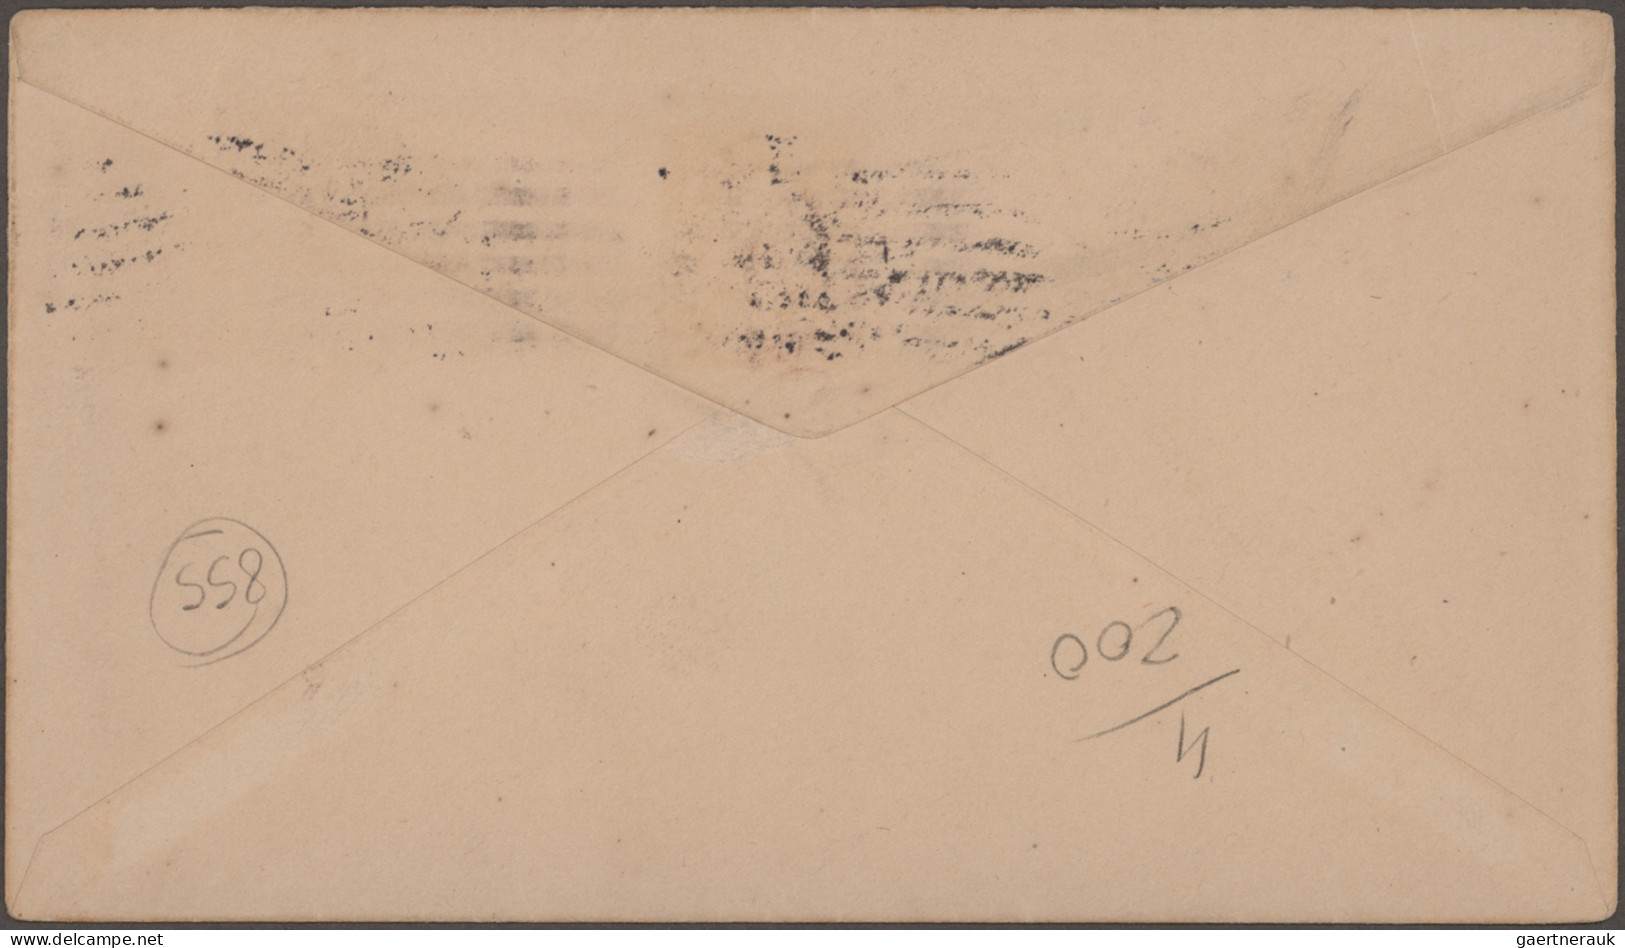 Hawaii - Postal Stationary: 1928, 2c Carmine Overprinted "HAWAI 1778-1928", Tied - Hawaï